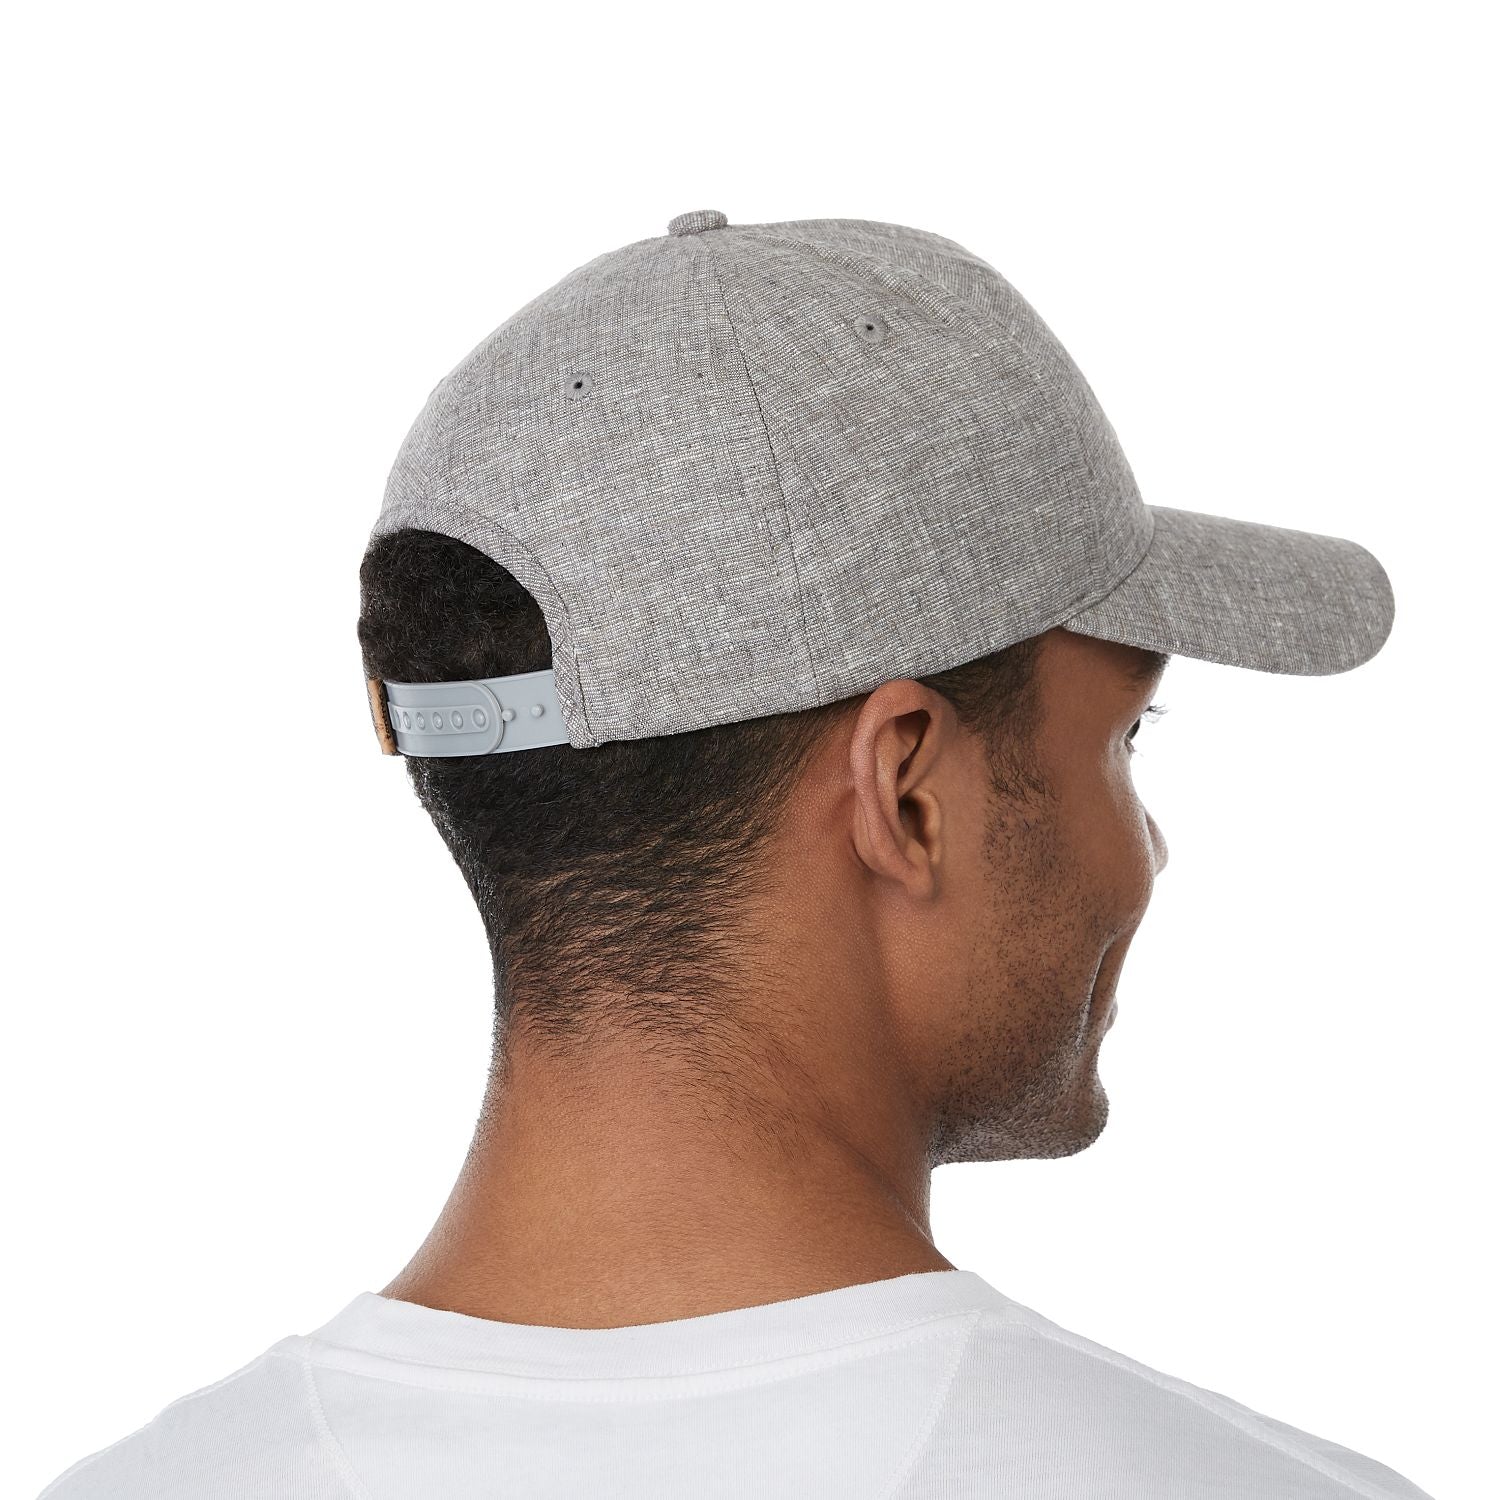 Customizable Tentree basic hemp Altitude hat in grey.